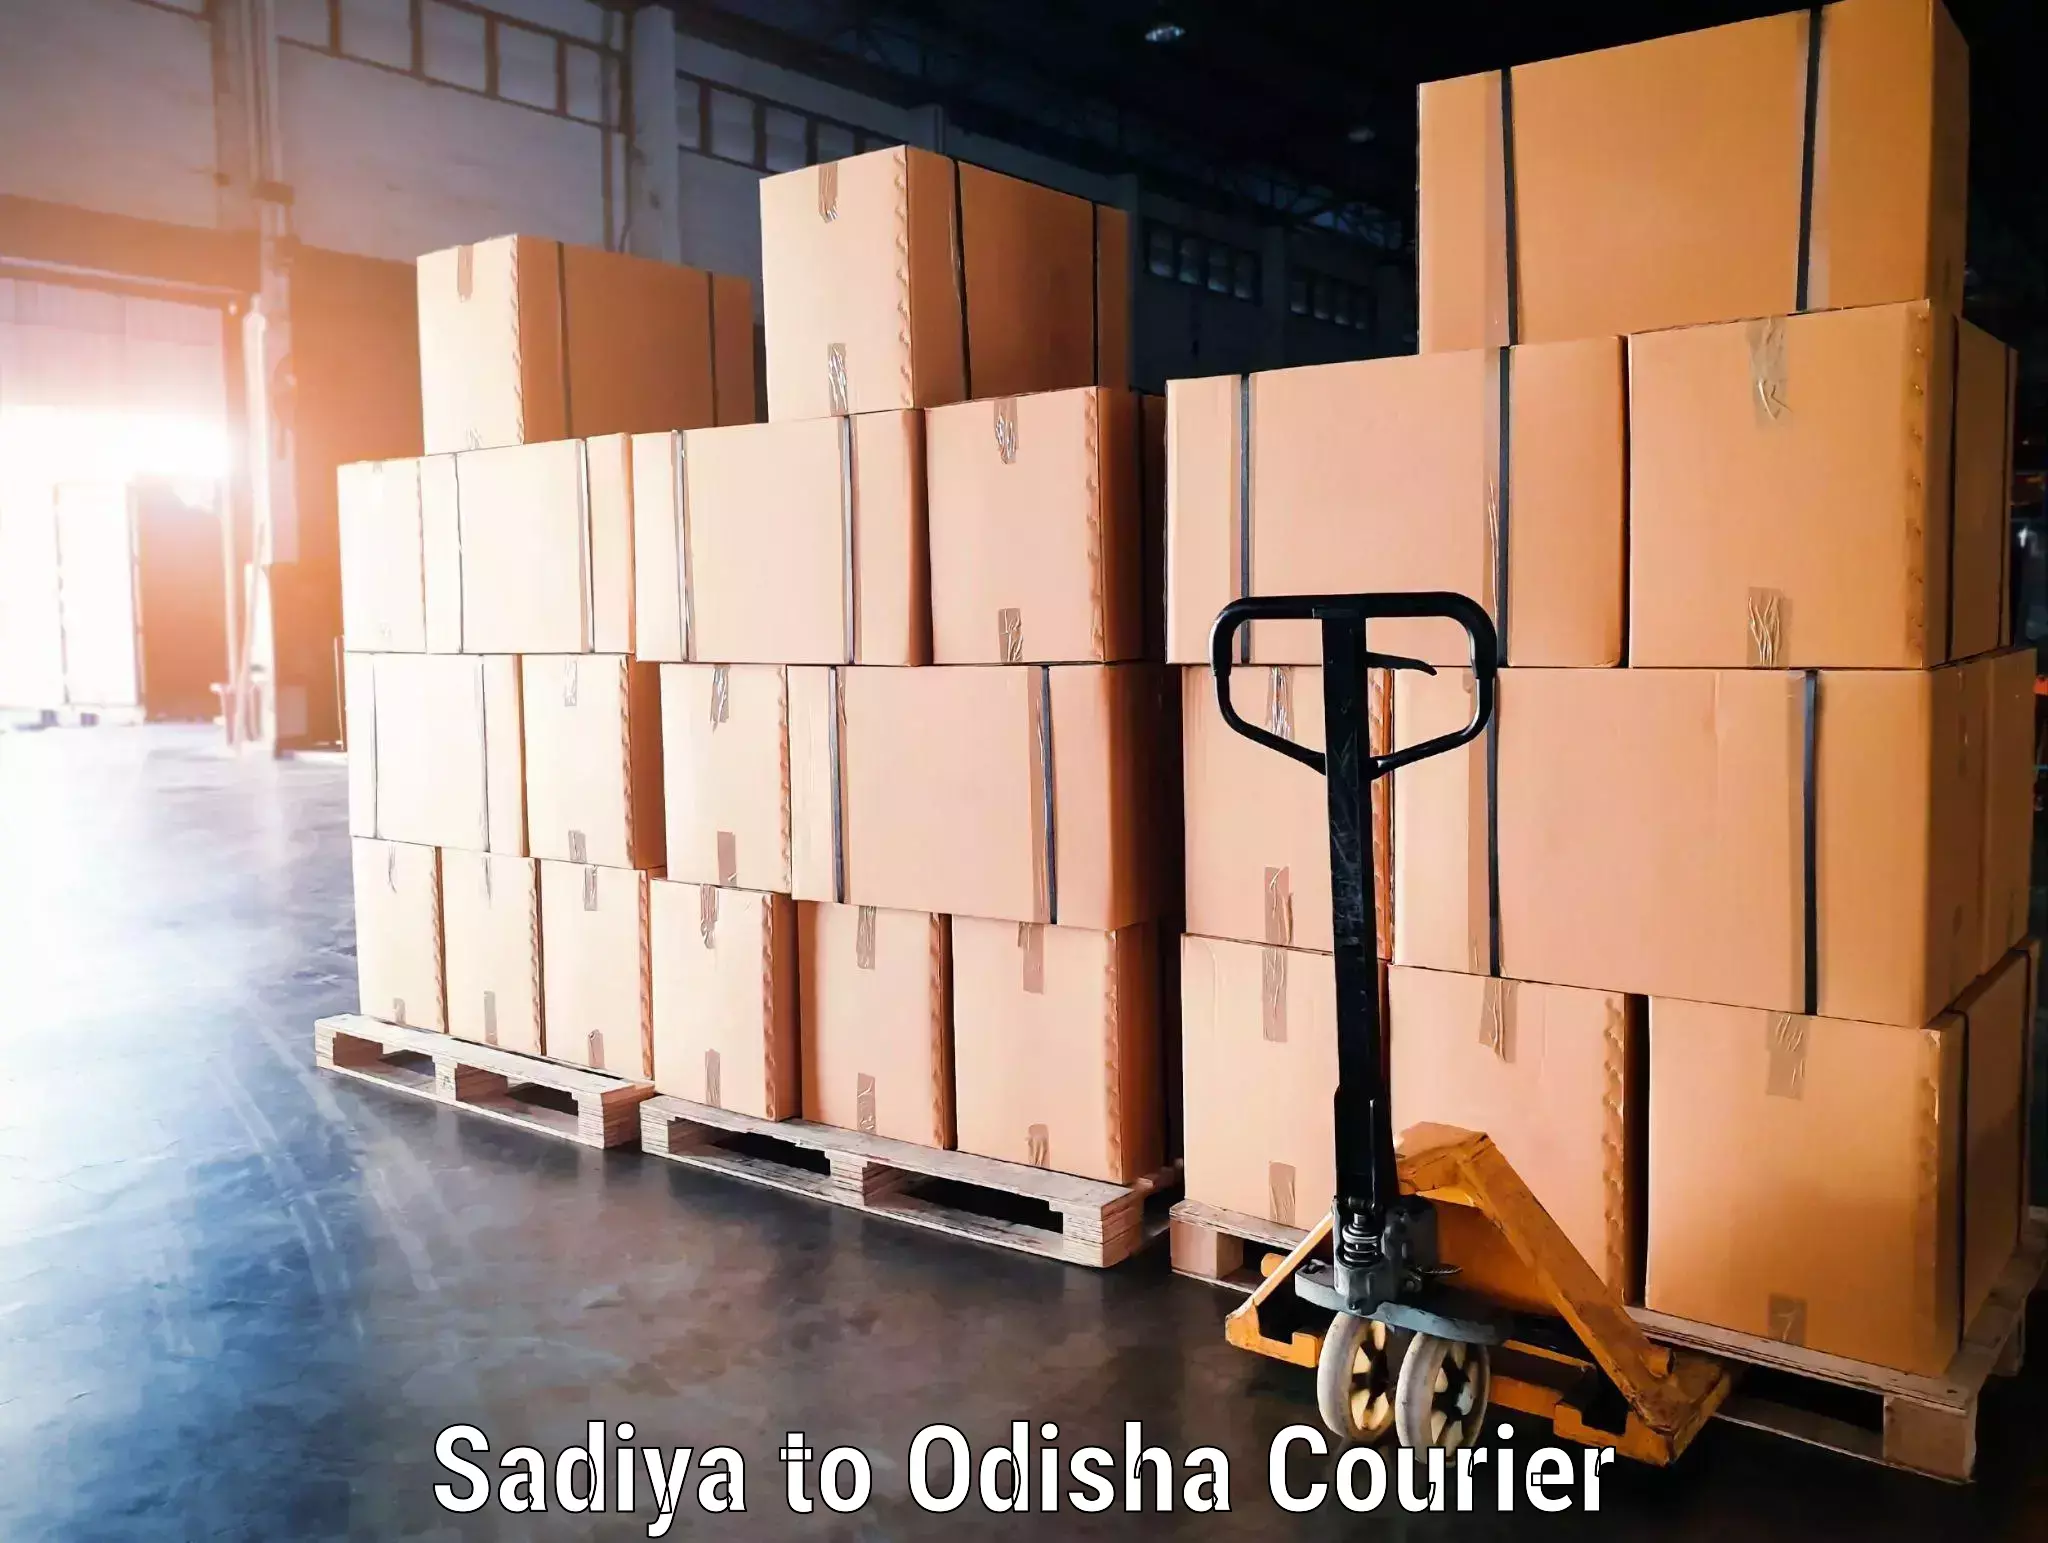 Holiday season luggage delivery Sadiya to Odisha